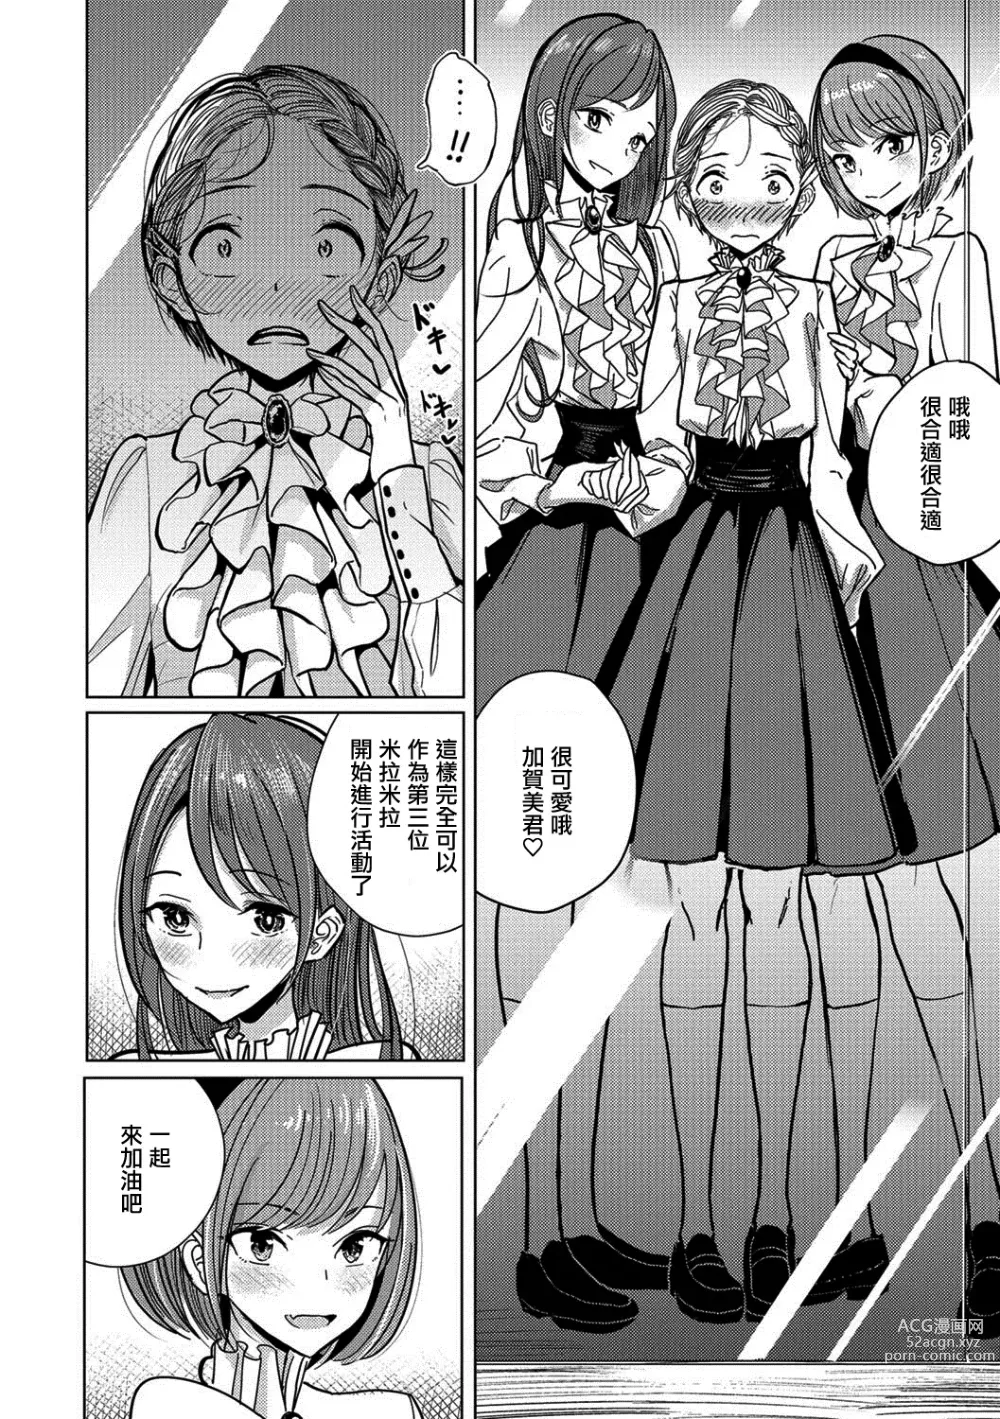 Page 9 of manga Bokura wa...